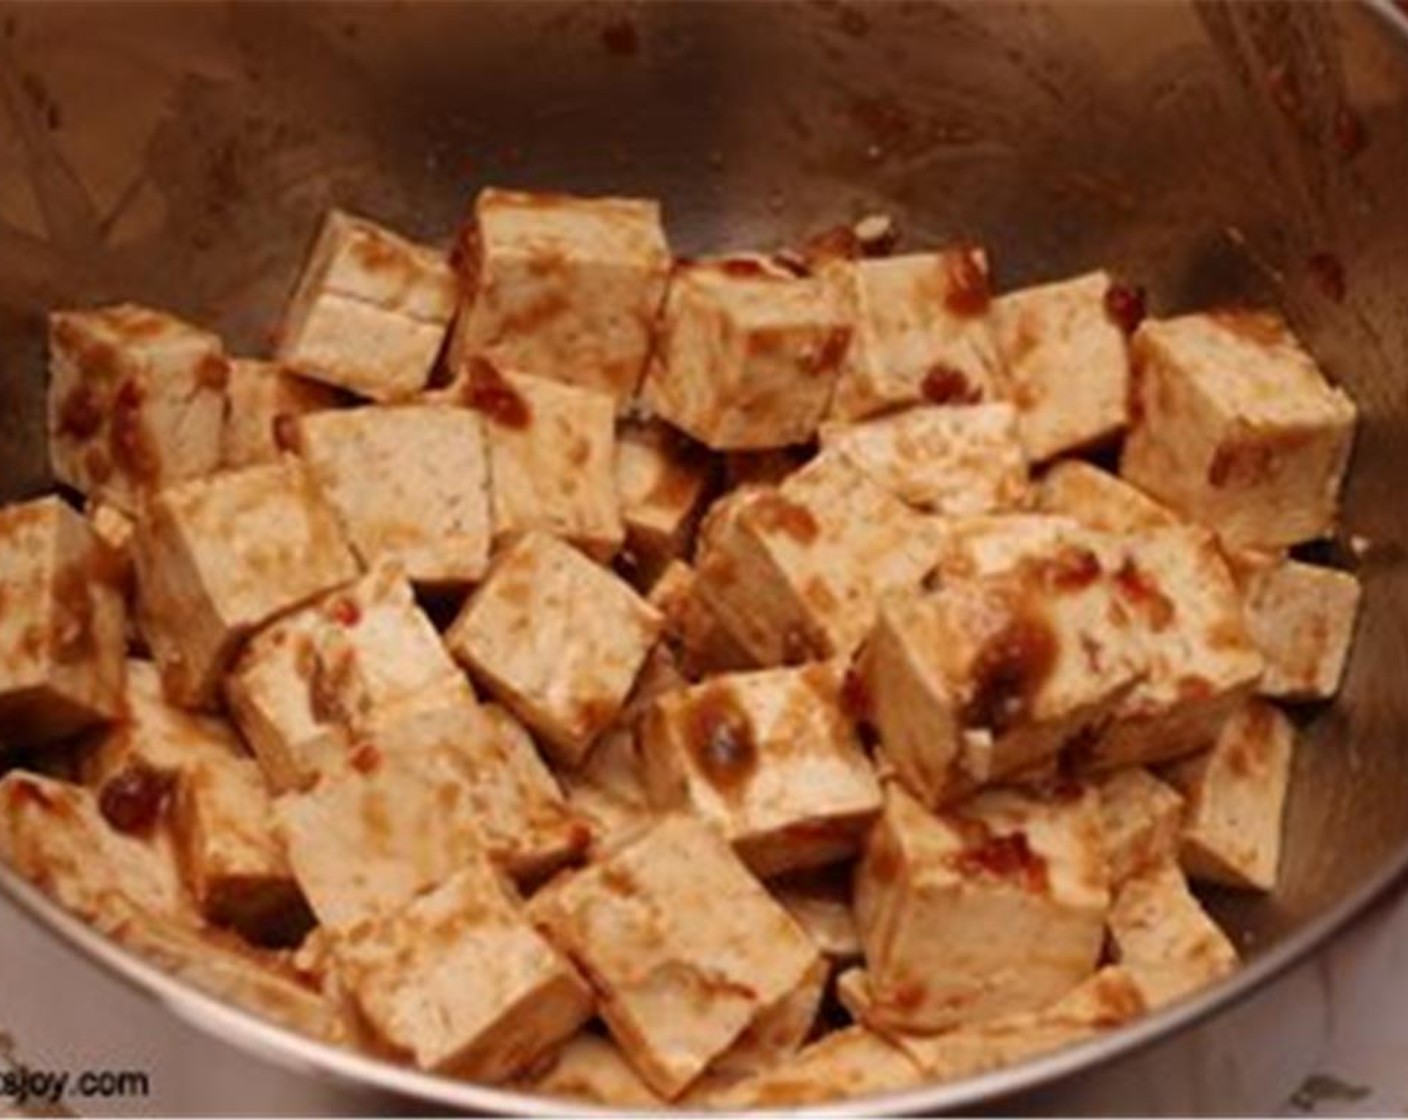 Schritt 3 Den Tofuwürfel dazugeben und gut vermengen, sodass jeder Würfel mit Marinade bedeckt ist. Das Ganze etwa 30 Minuten bis zu einer Stunde ruhen lassen. Dann den Backofen auf 175 °C vorheizen.